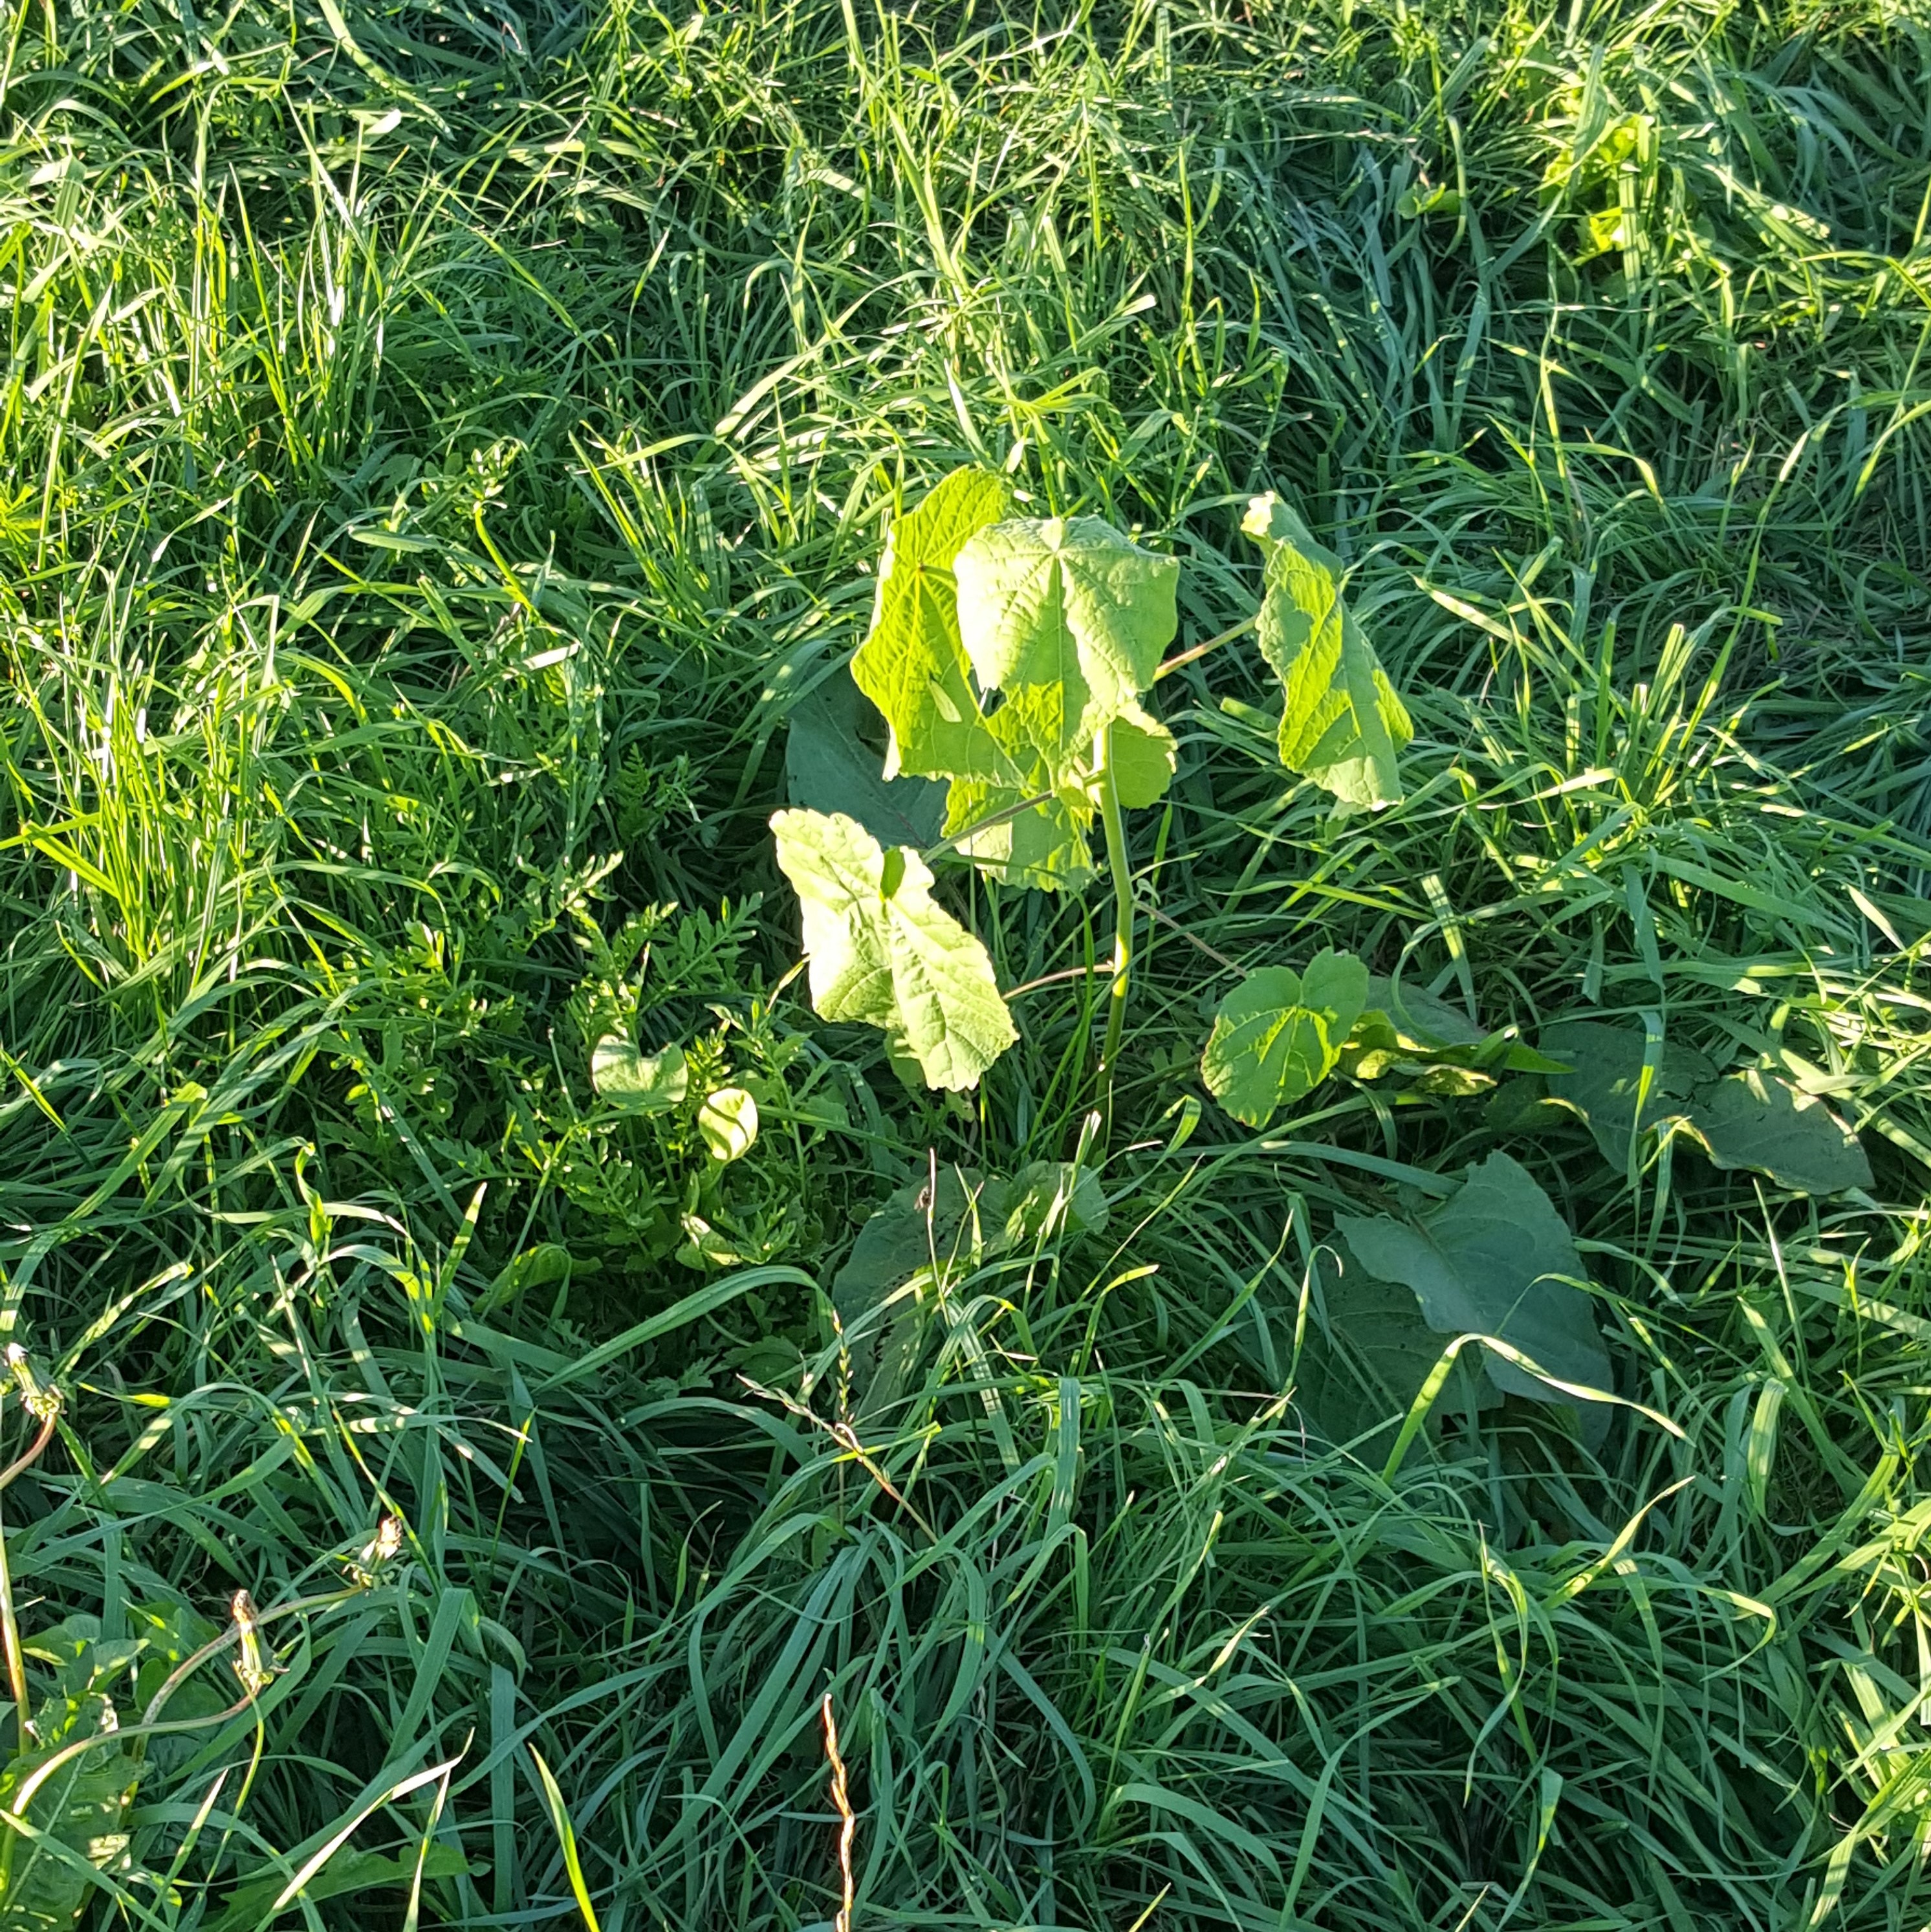 Close-up of velvetleaf in grass